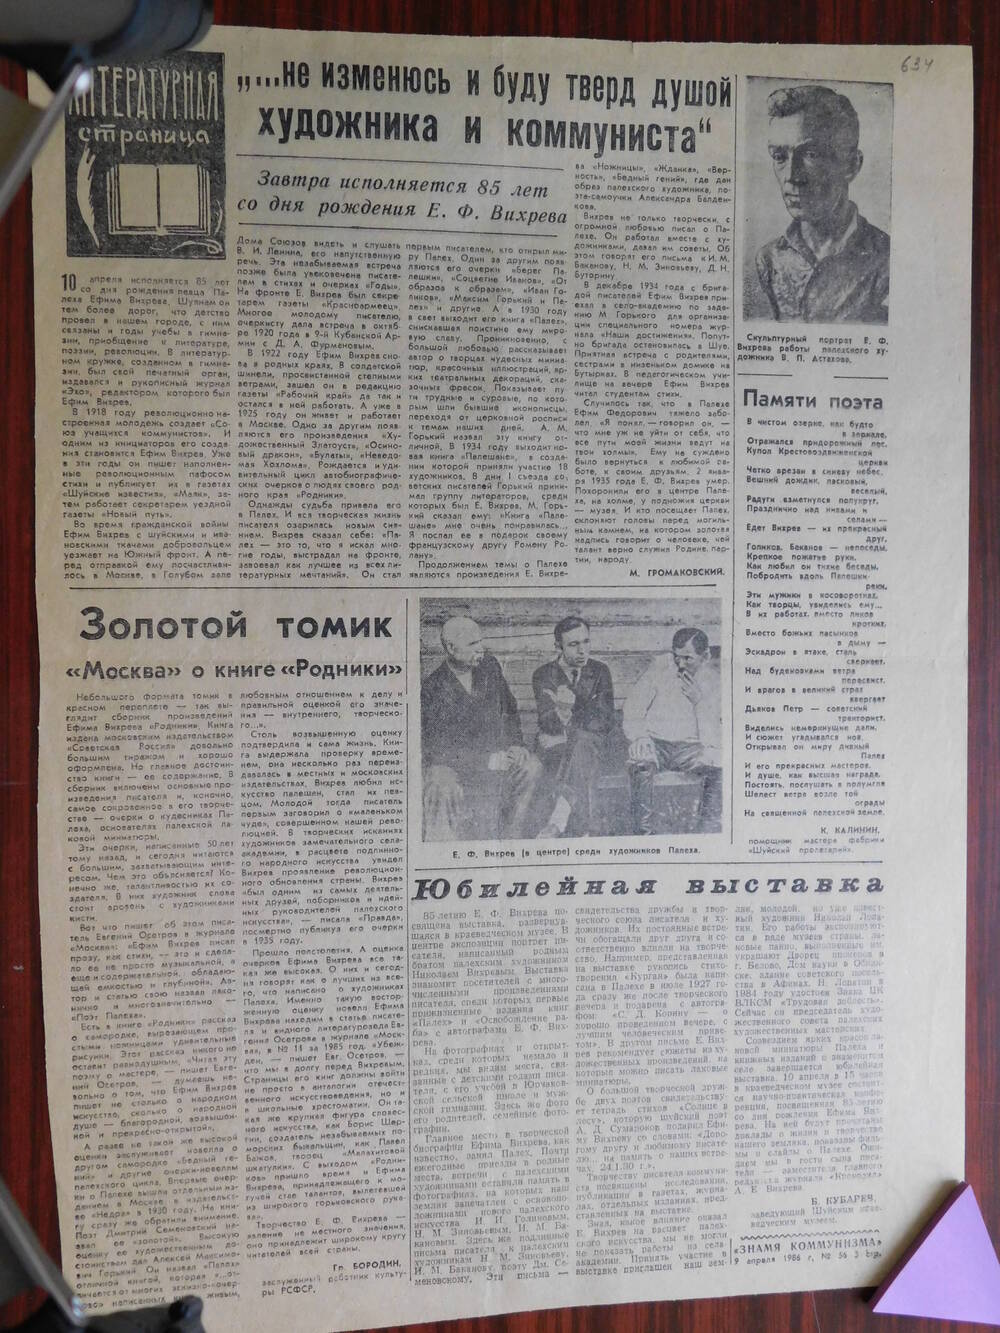 Фрагмент газеты Знамя коммунизма № 56 от 09.04.1986 г. К 85-летию со дня рождения Е.Ф. Вихрева. Шуя.